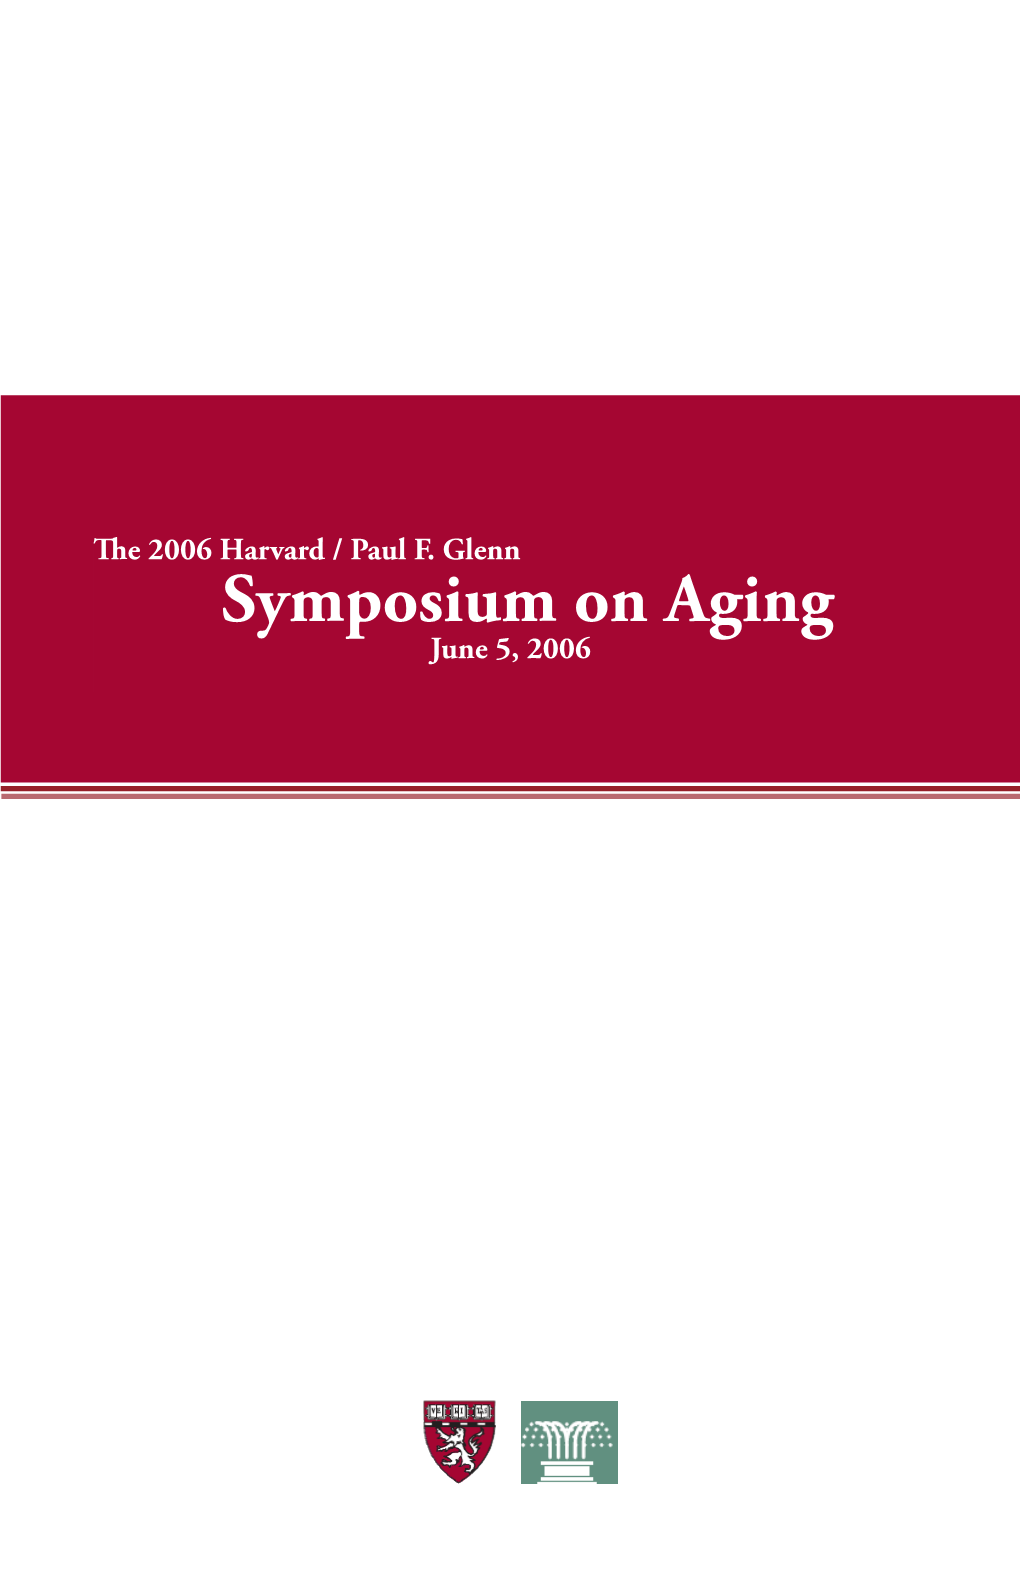 Symposium on Aging June 5, 2006 Paul F